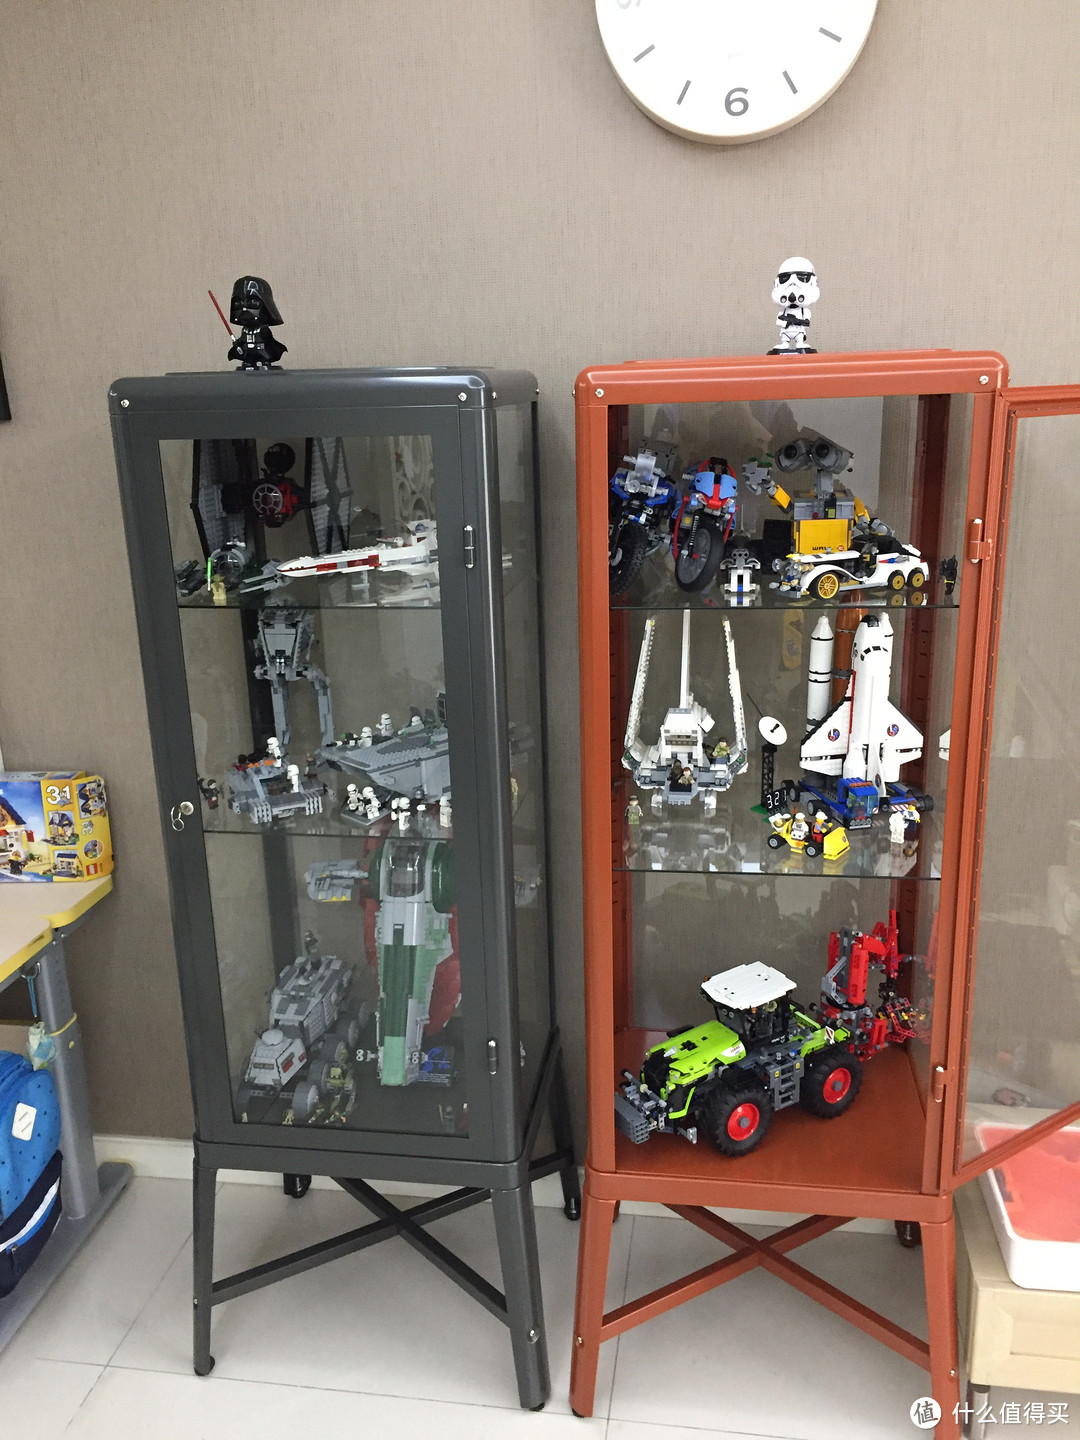 小型乐高玩具陈列容器——宜家法布利克玻璃柜